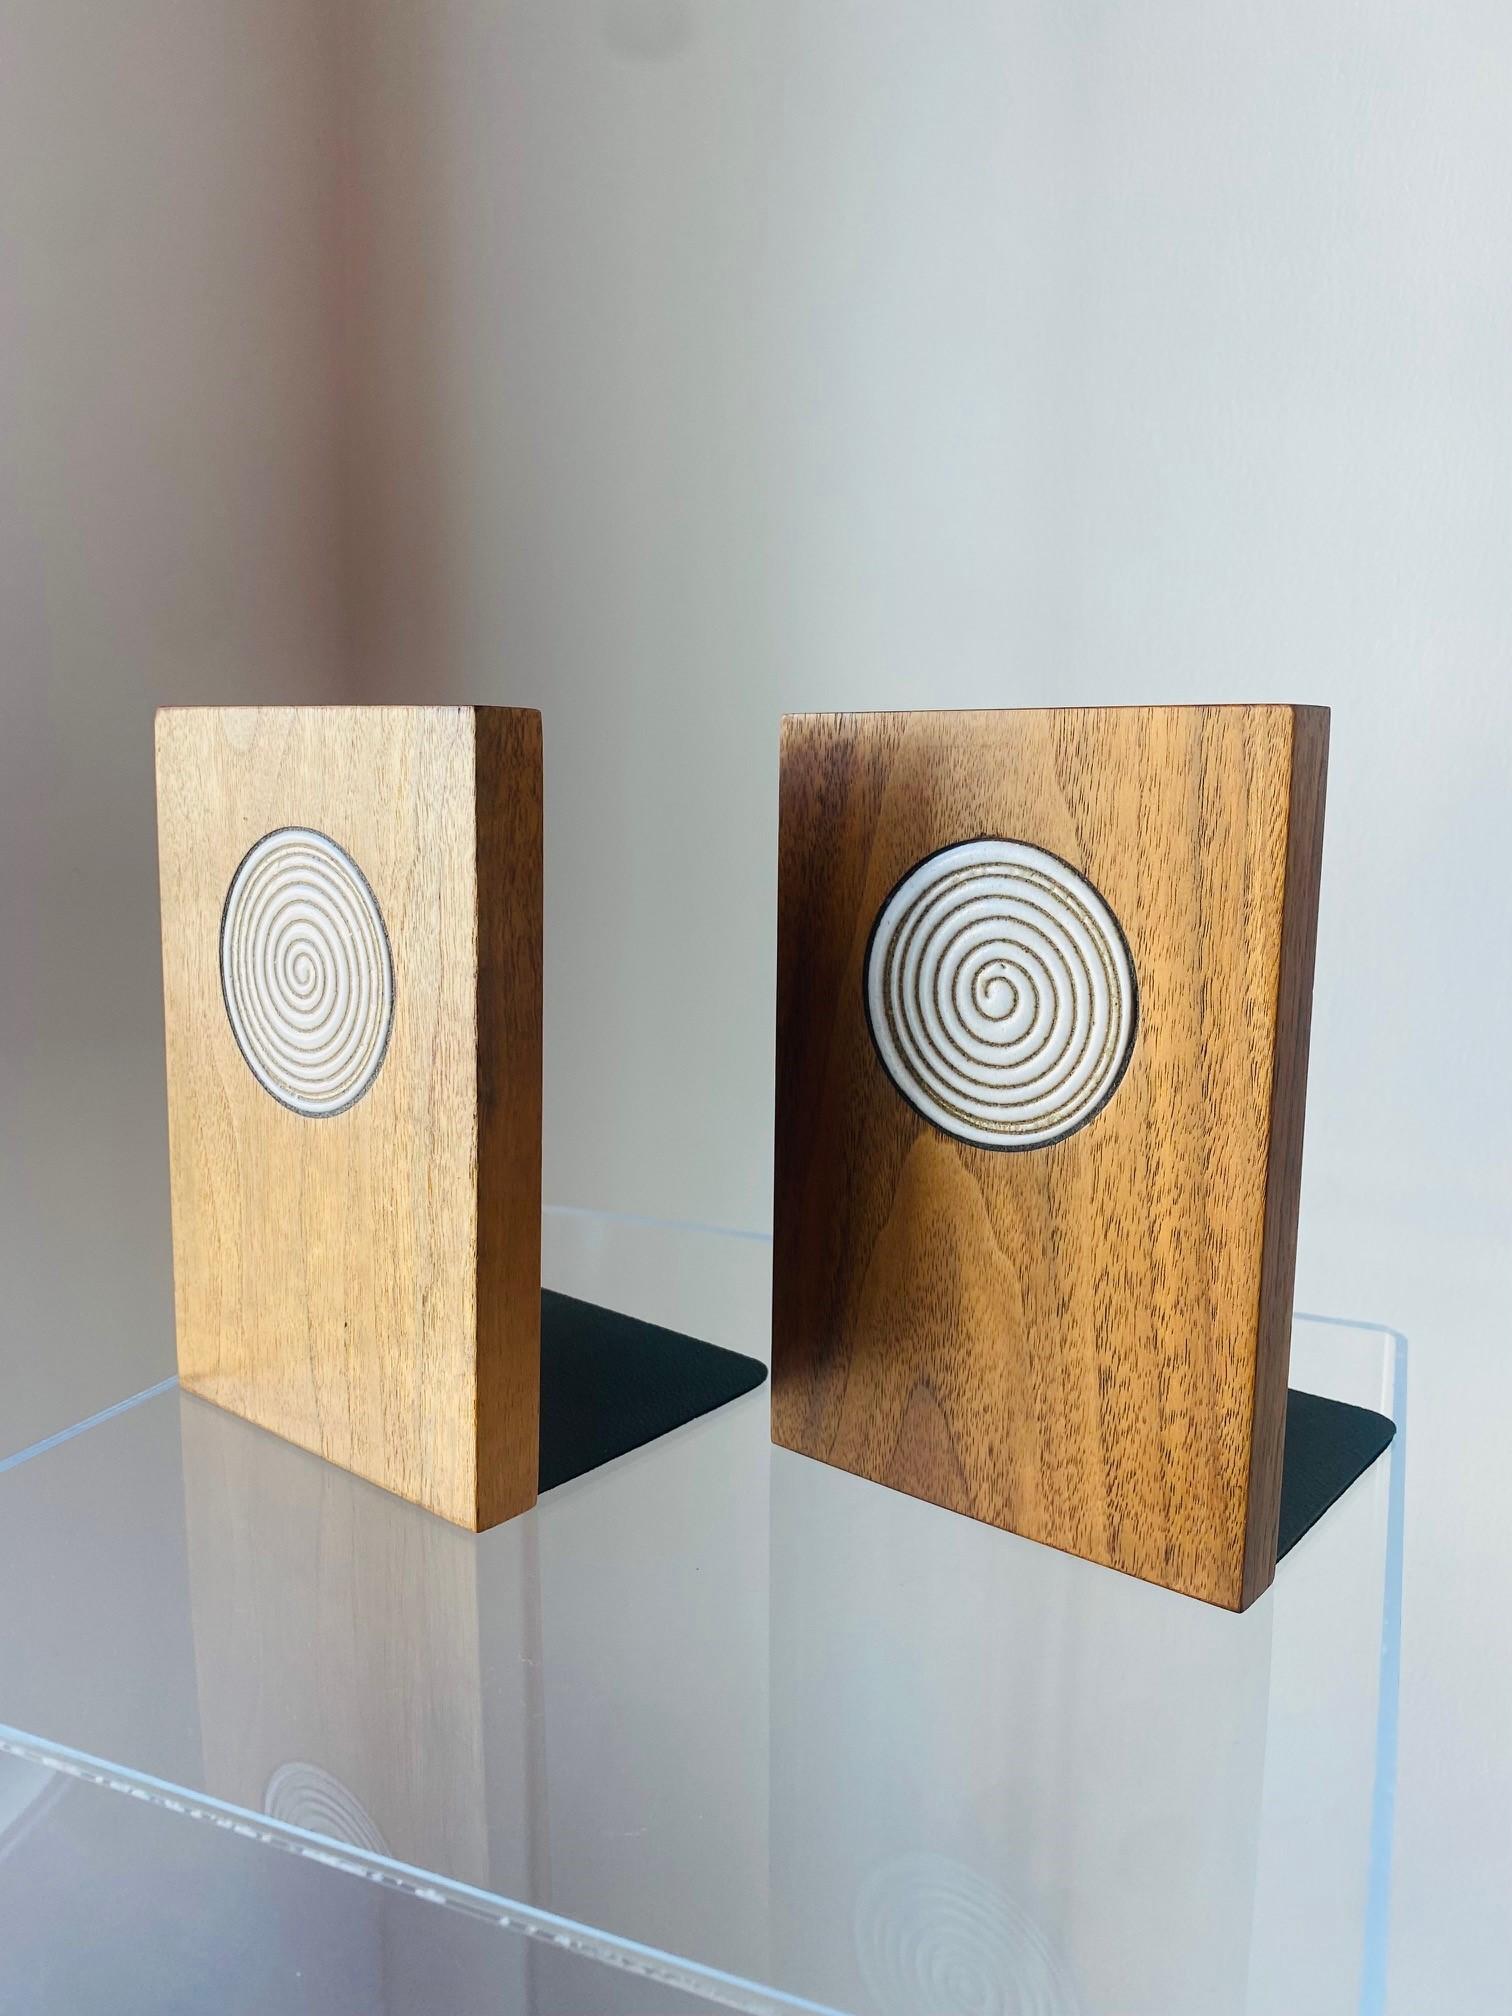 Ein schönes Paar Buchstützen aus Keramik und Walnussholz von Jane und Gordon Martz für ihr Unternehmen Marshall Studios. Jede Buchstütze hat eine skulpturale Form und präsentiert eine Keramikintarsie in Holz. 1950er Jahre, USA.

Mid-Century,